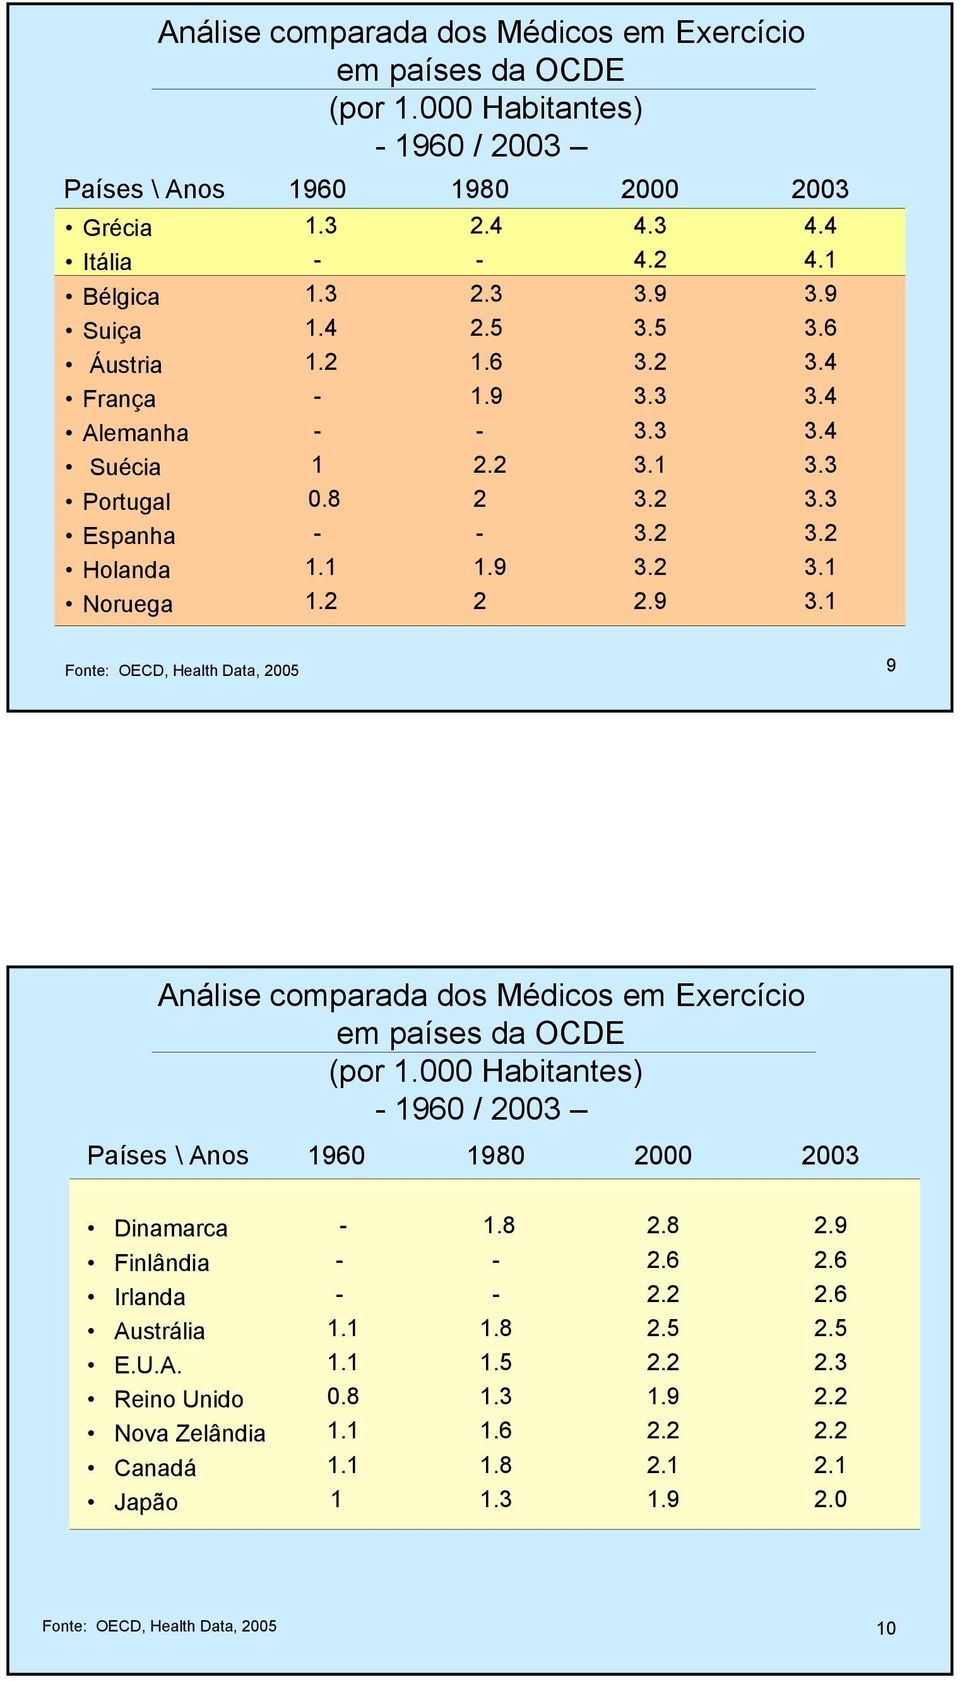 3 3.1 3.2 3.2 3.2 2.9 2003 4.4 4.1 3.9 3.6 3.4 3.4 3.4 3.3 3.3 3.2 3.1 3.1 Fonte: OECD, Health Data, 2005 9 Análise comparada dos Médicos em Exercício em países da OCDE (por 1.